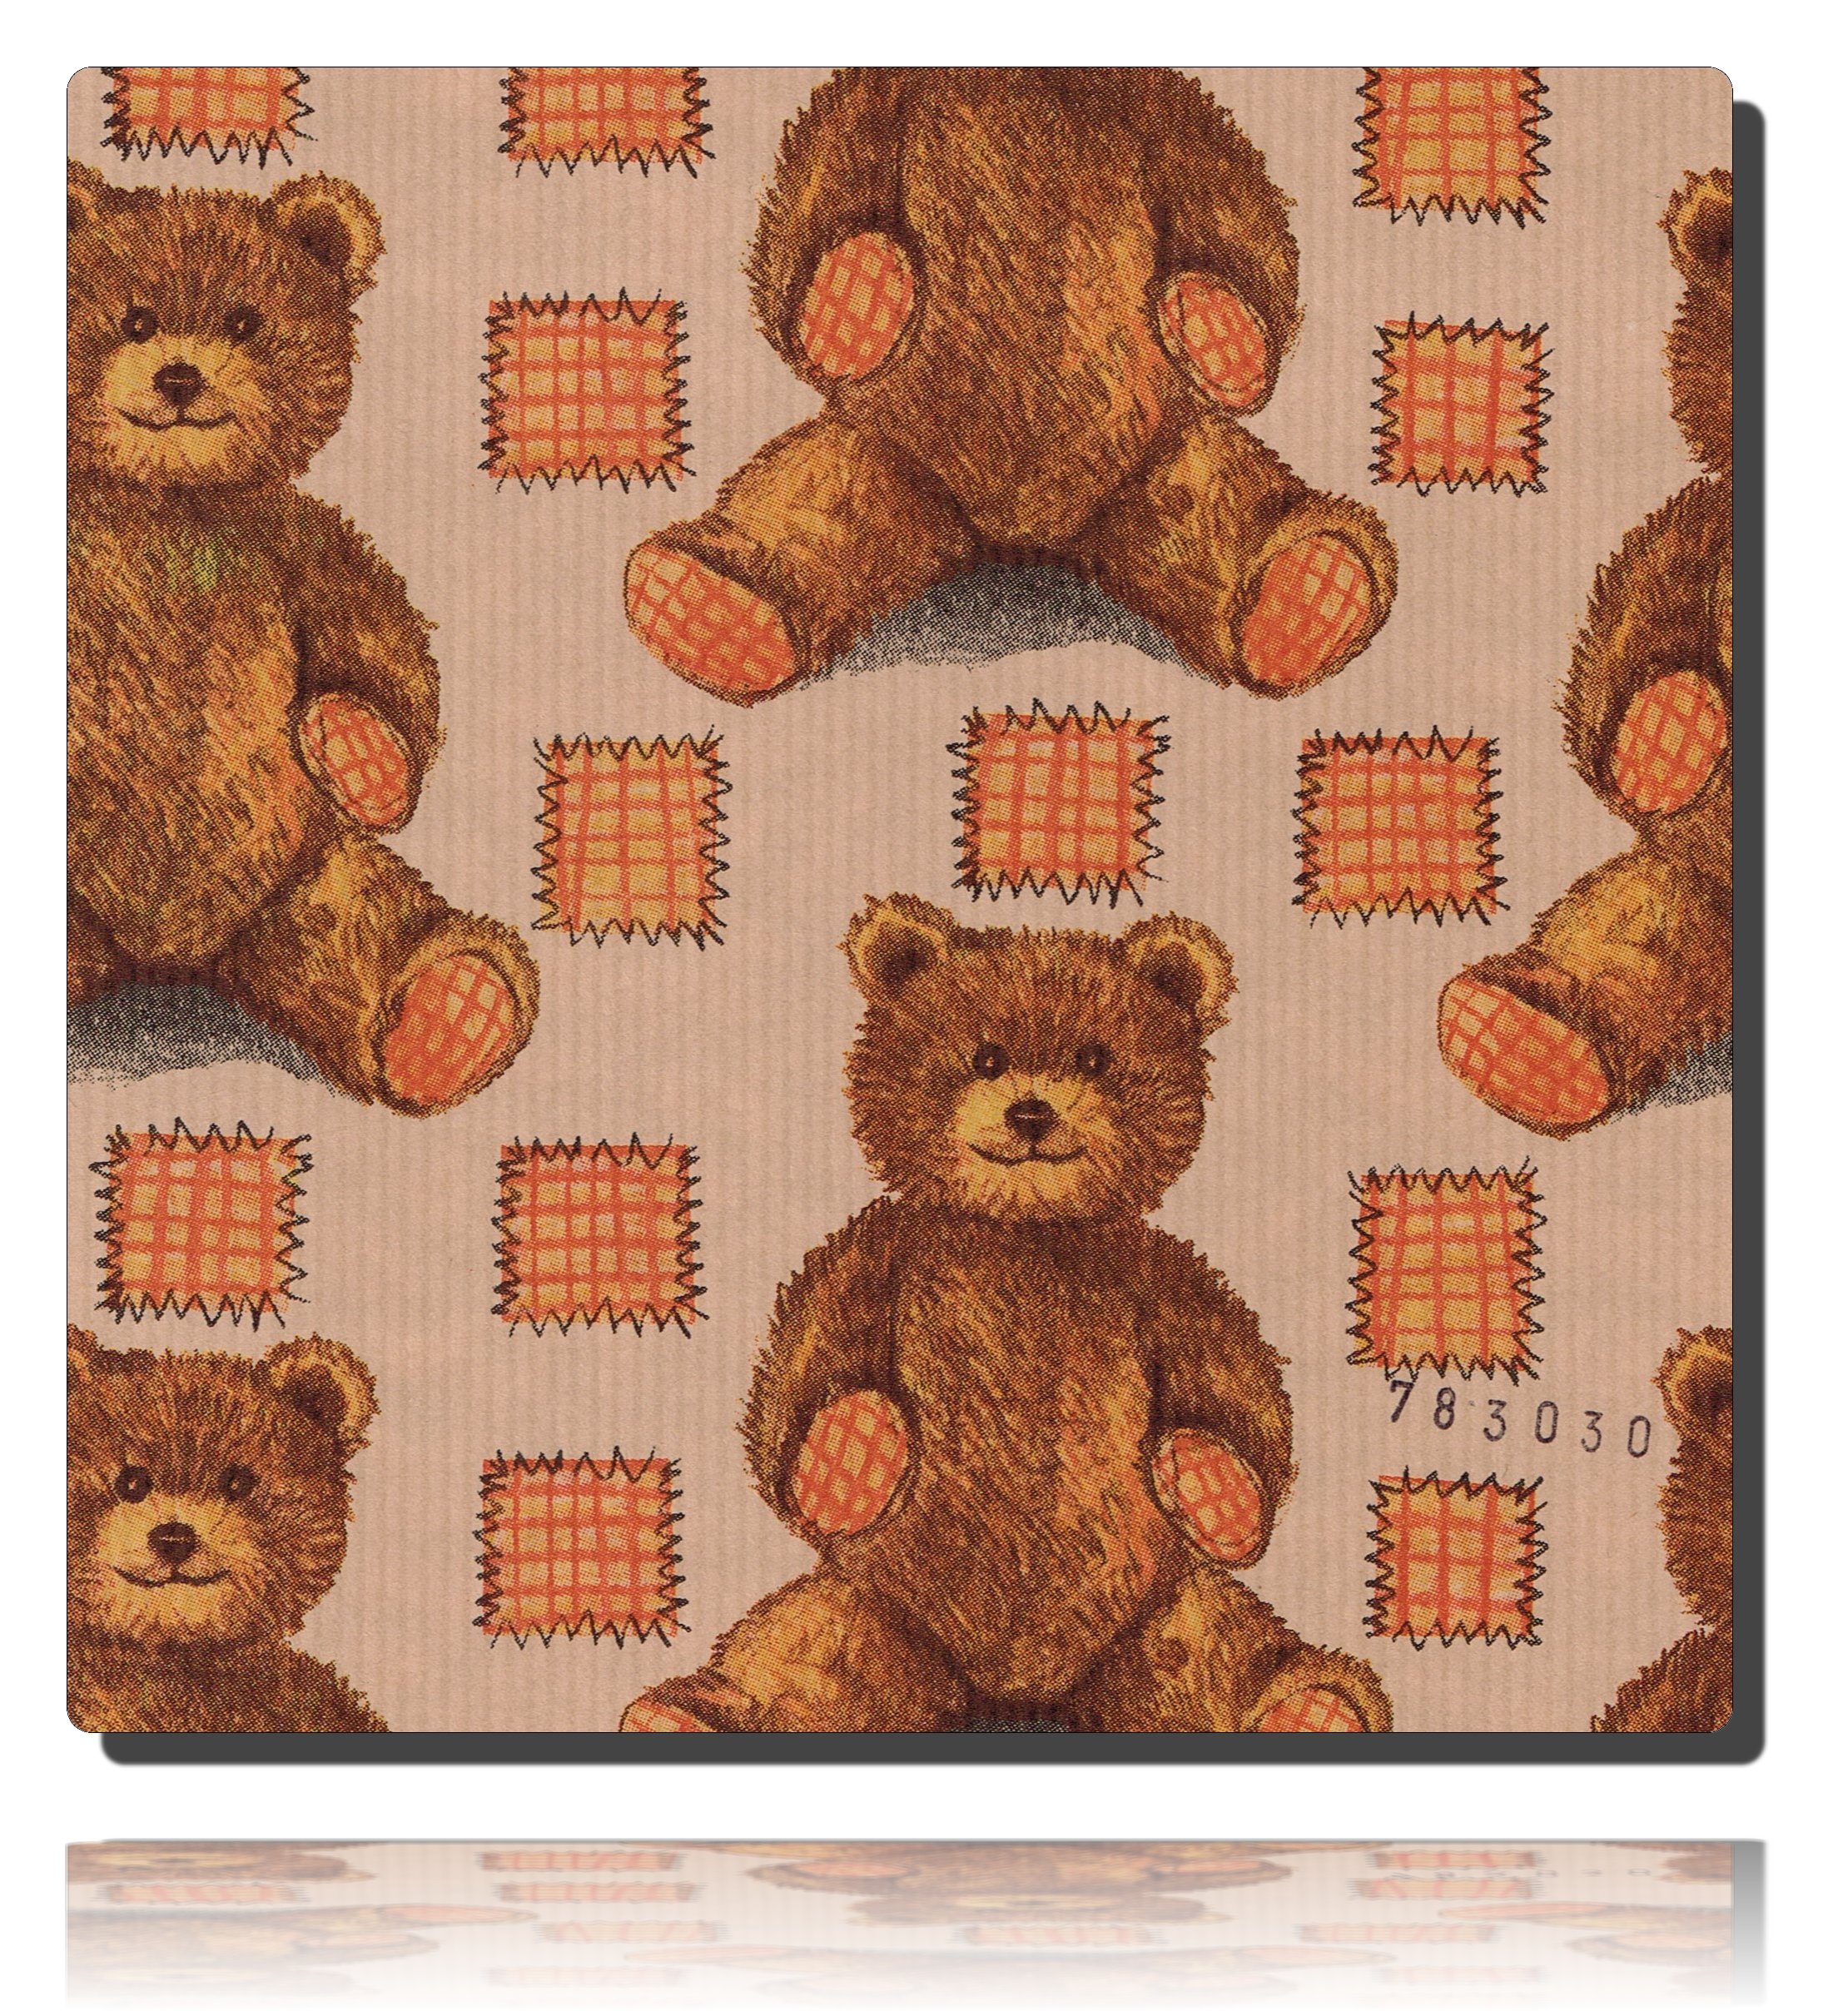 Beispiel eines in dem Geschenkpapier Teddybär, natur - 783030 verpackten Geschenk